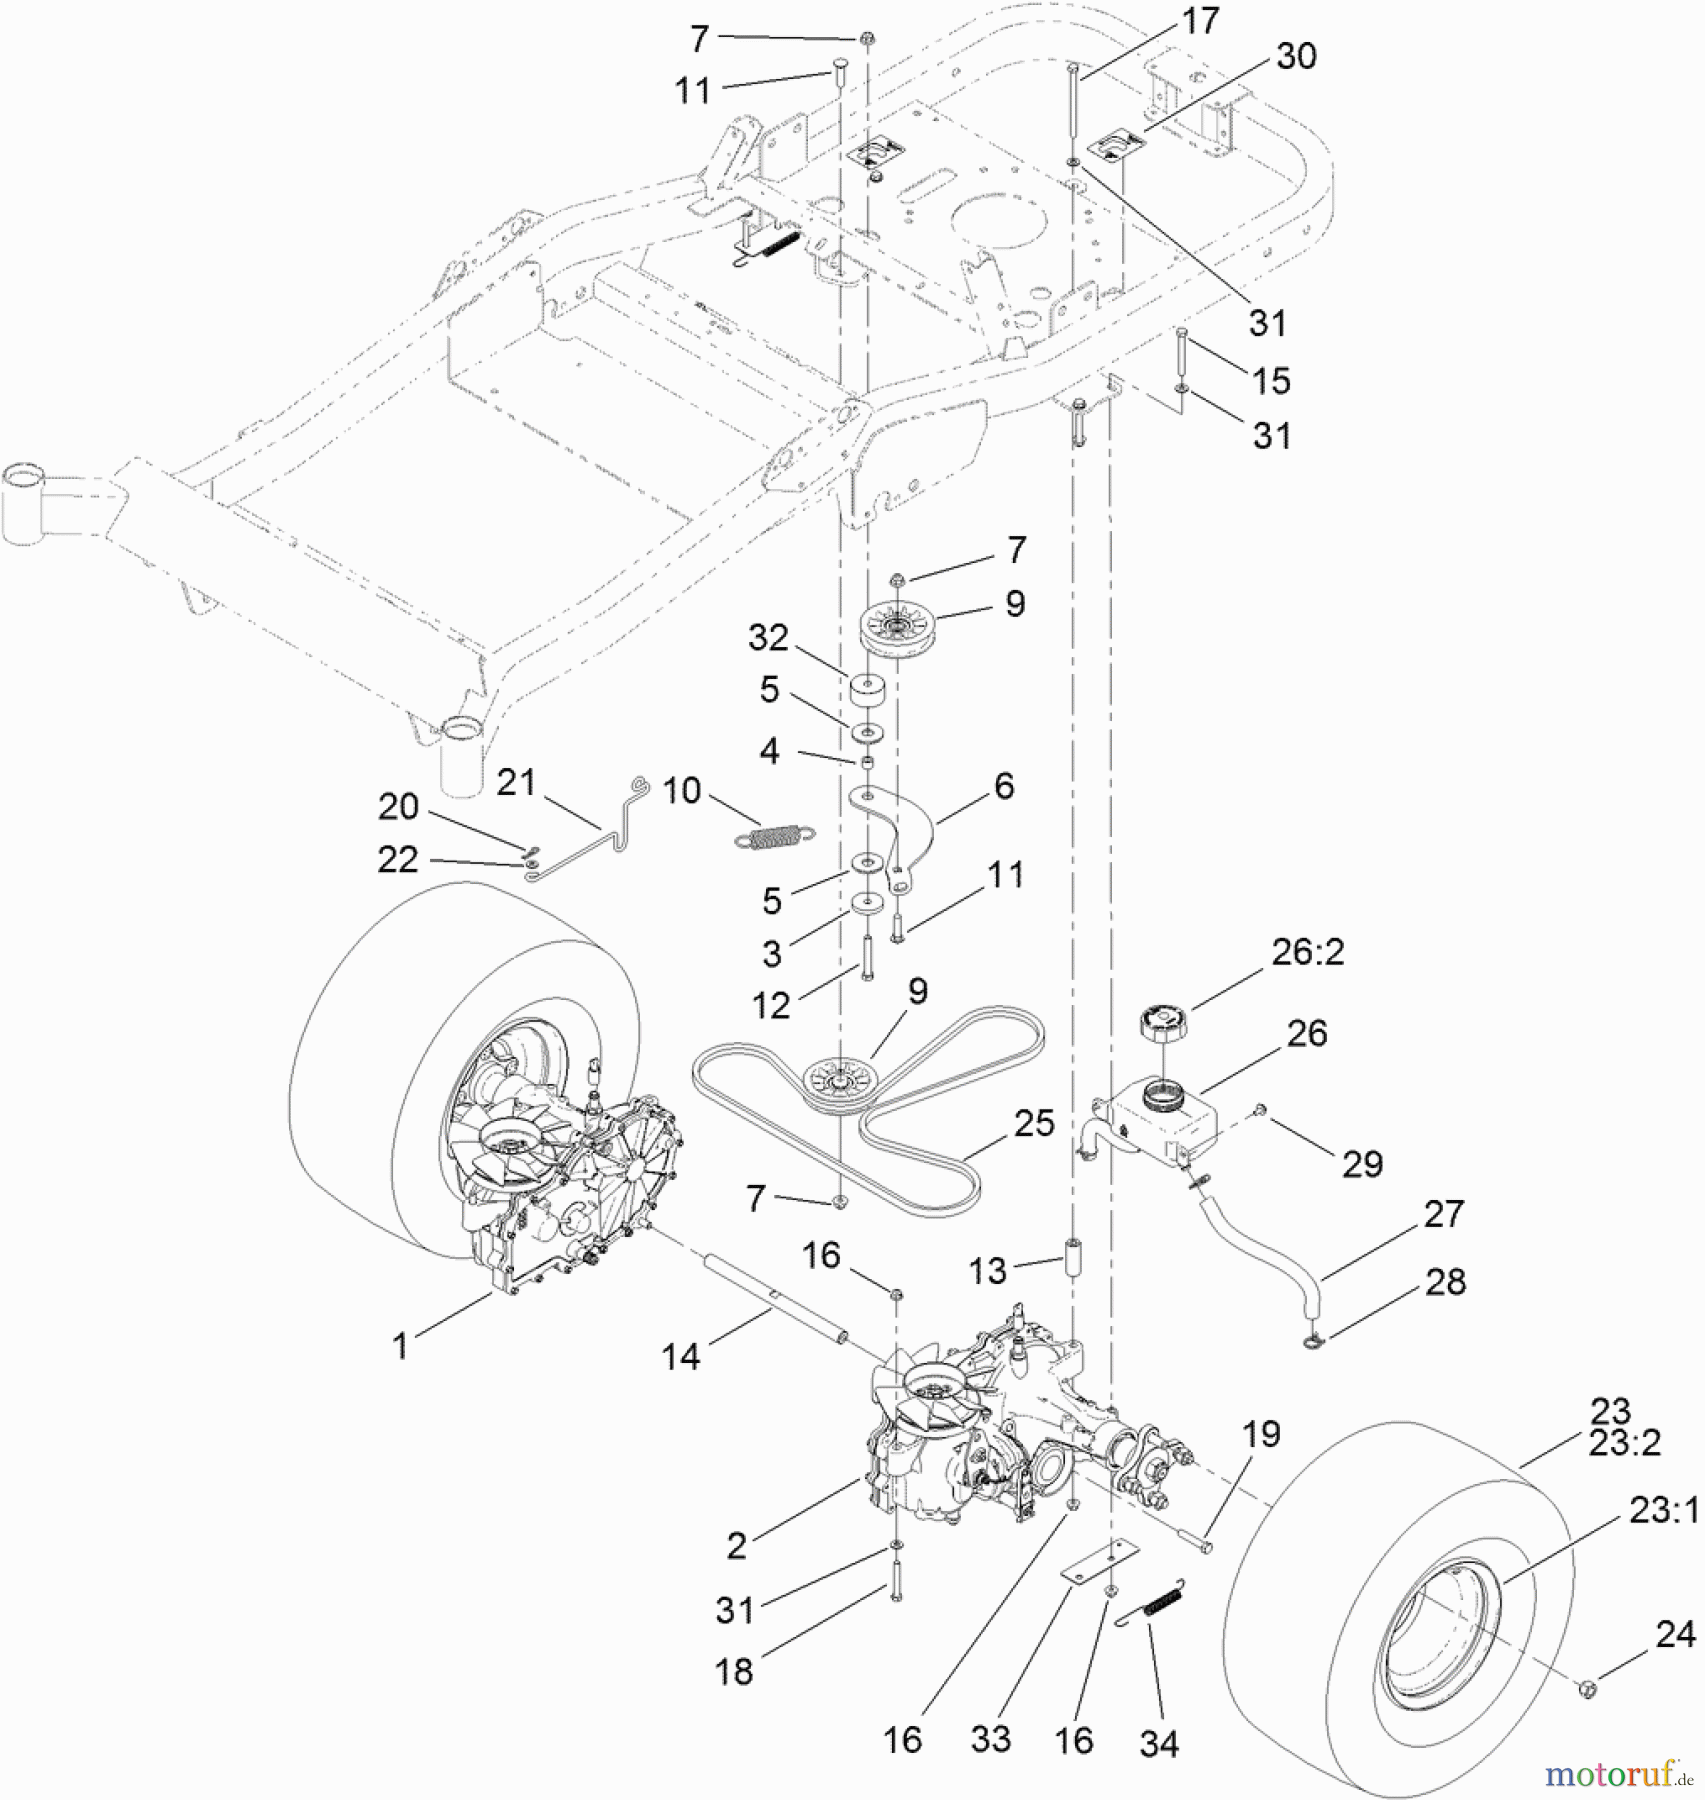  Toro Neu Mowers, Zero-Turn 74841 (ZX4820) - Toro TITAN ZX4820 Zero-Turn-Radius Riding Mower, 2012 (SN 312000001-312999999) TRACTION DRIVE ASSEMBLY